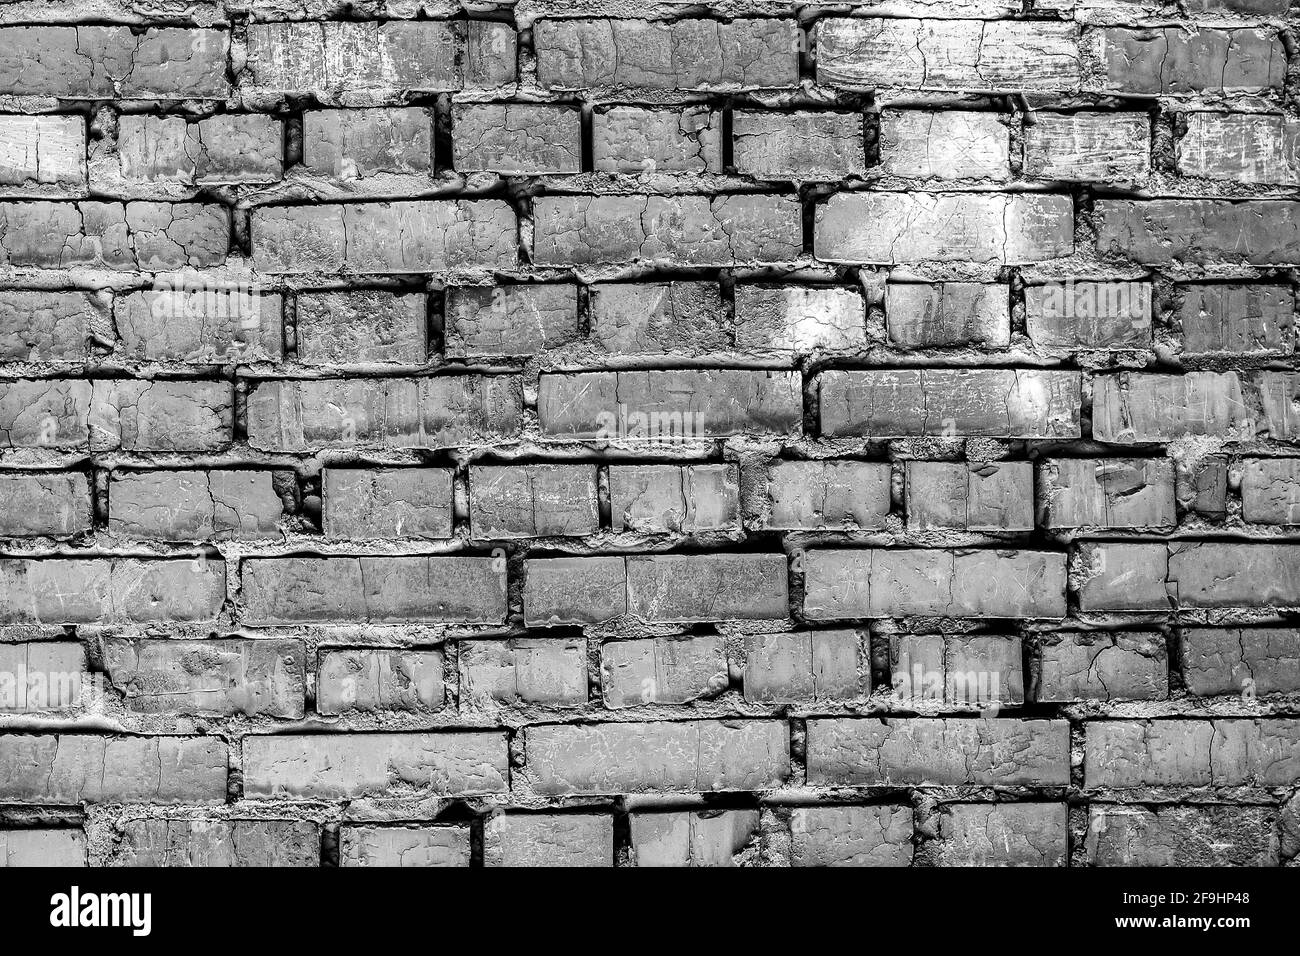 Mauerwerk in Graustufen. Textur einer alten Ziegelmauer. Stockfoto